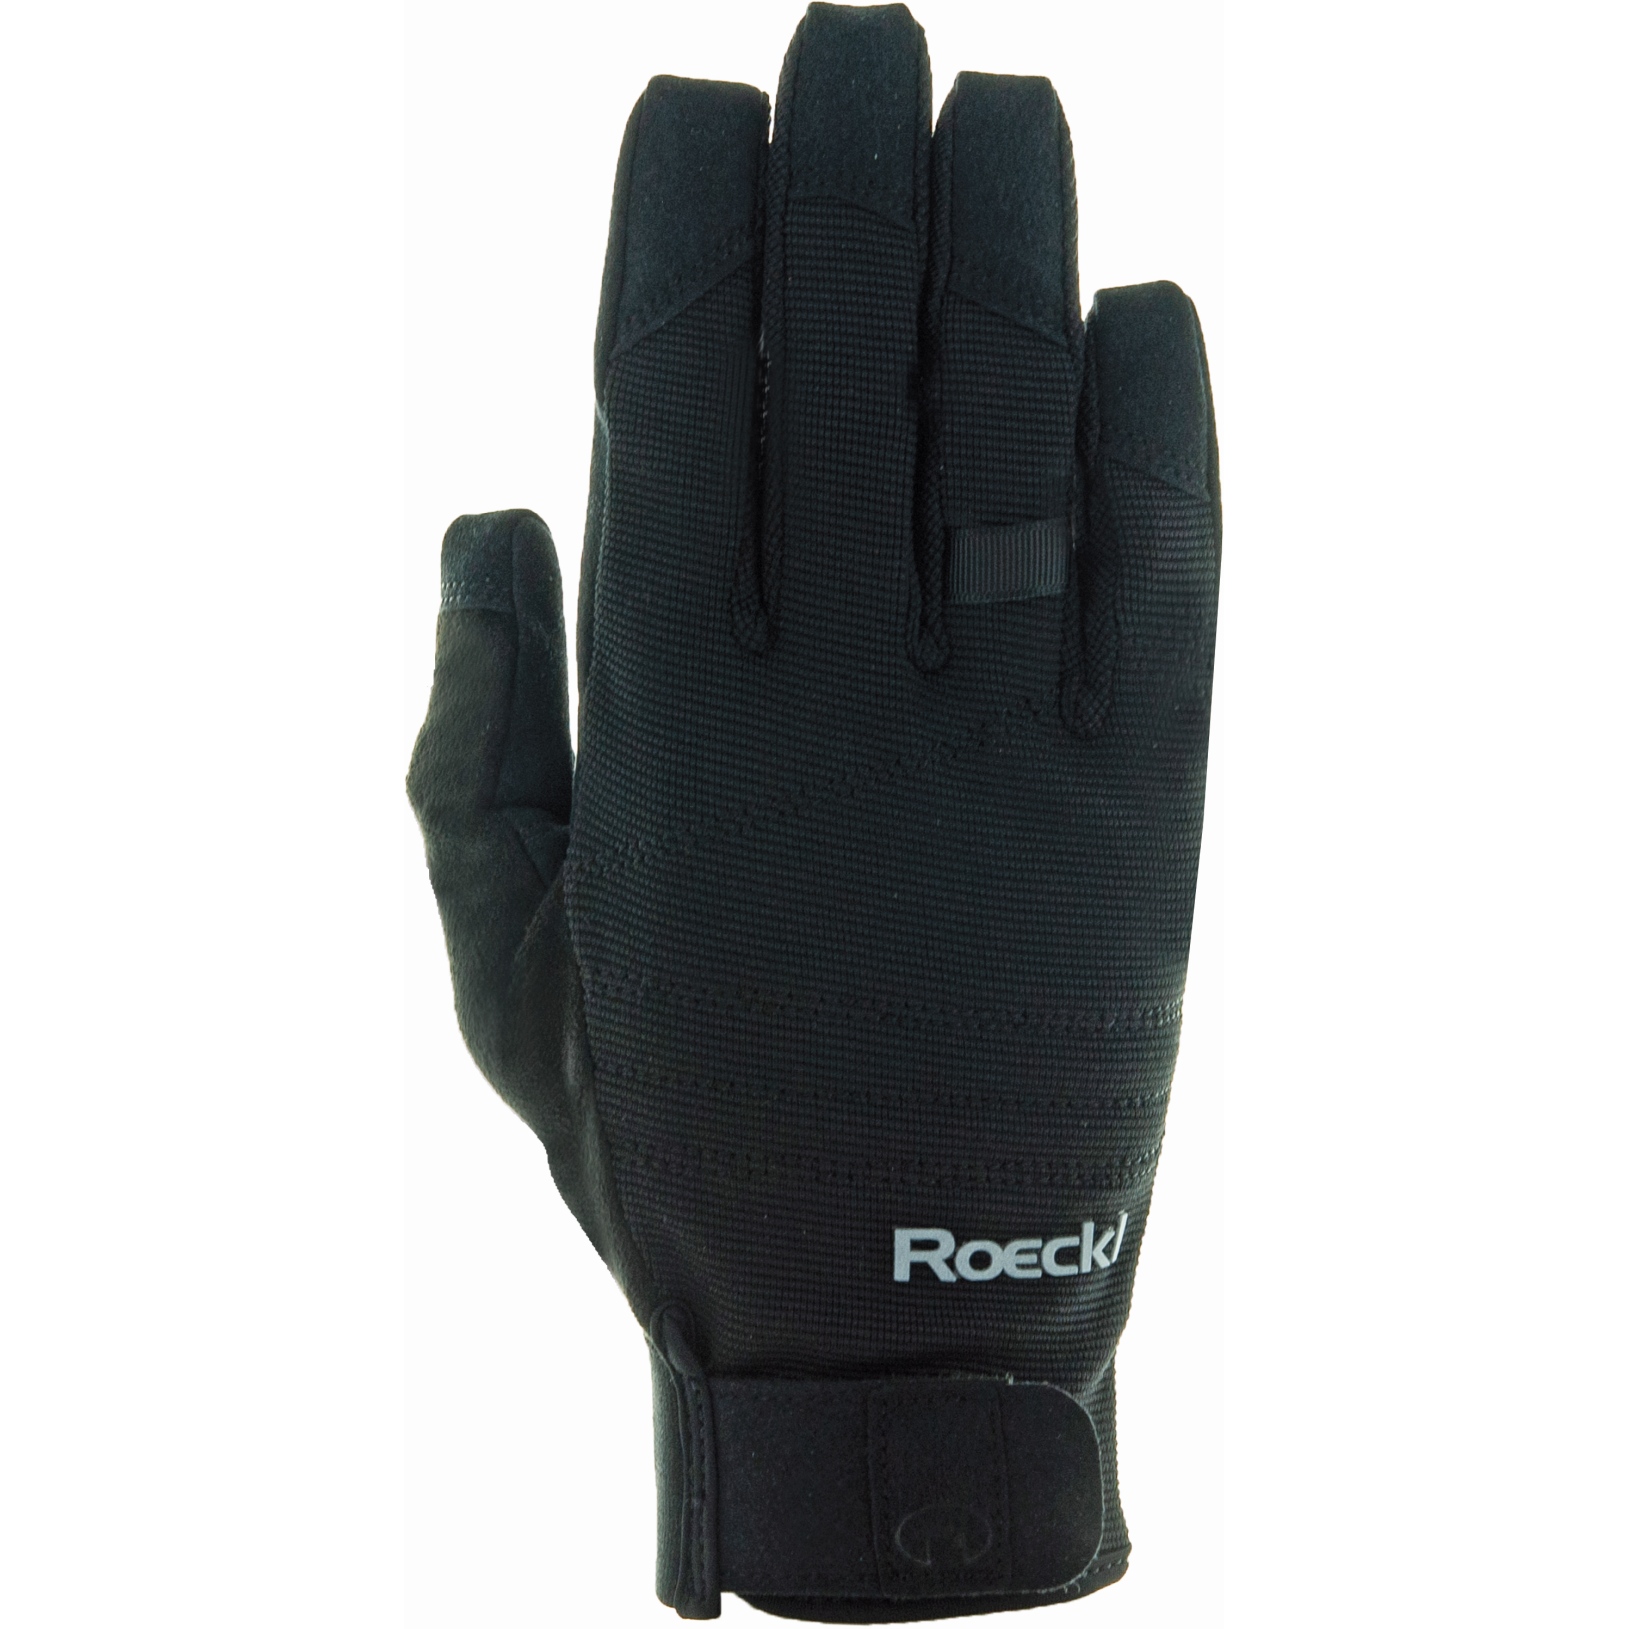 Produktbild von Roeckl Sports Kapan Kletterhandschuhe - schwarz 0999